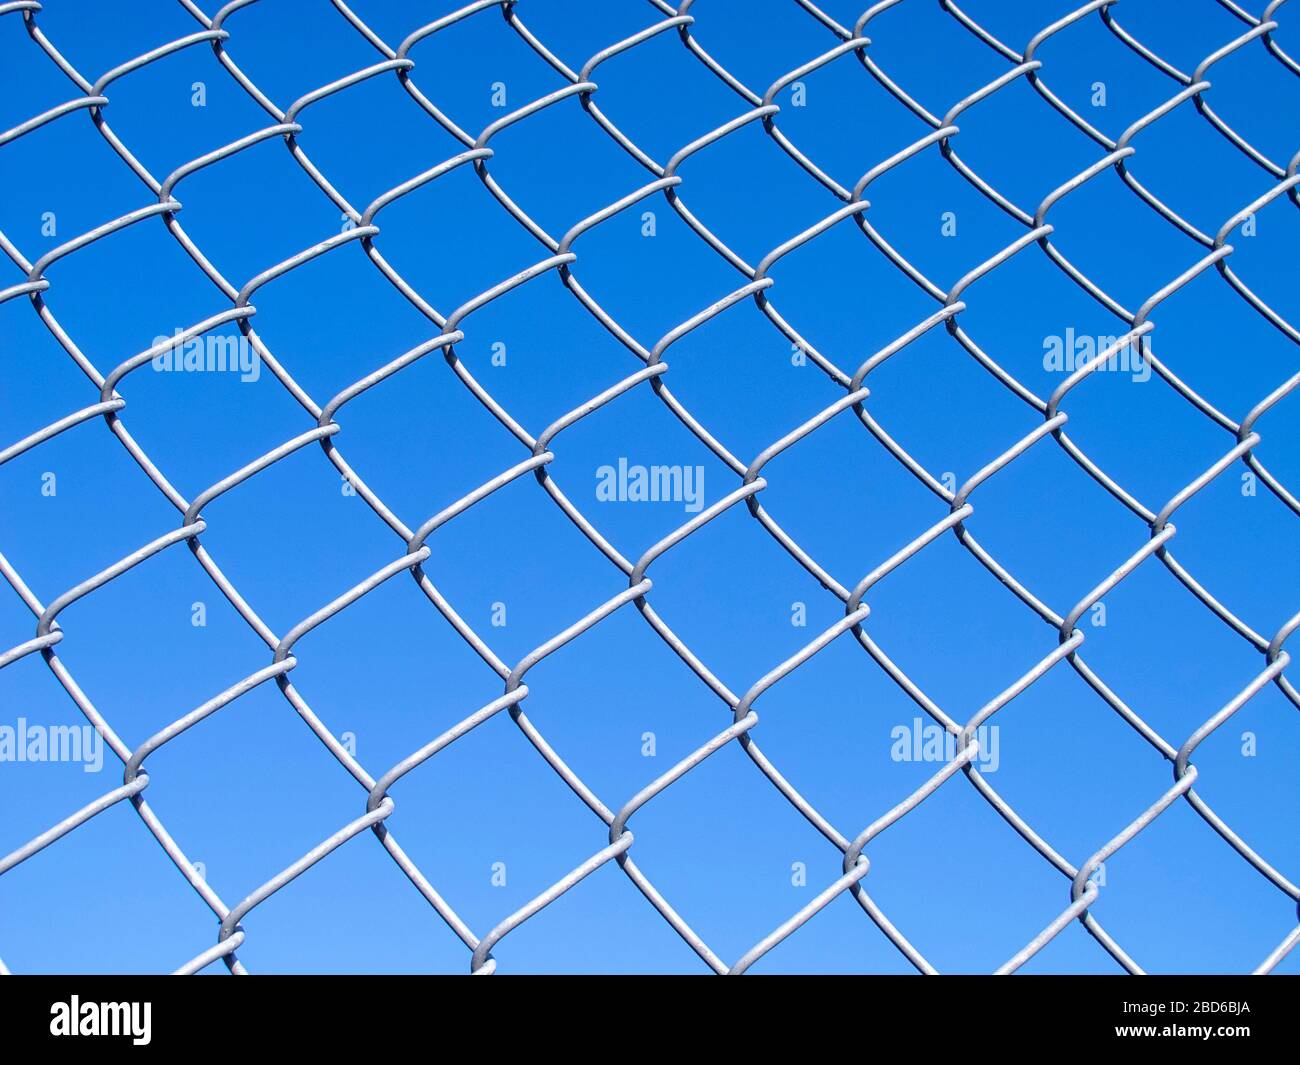 Catena maglia recinzione ambientato contro un cielo blu Foto Stock